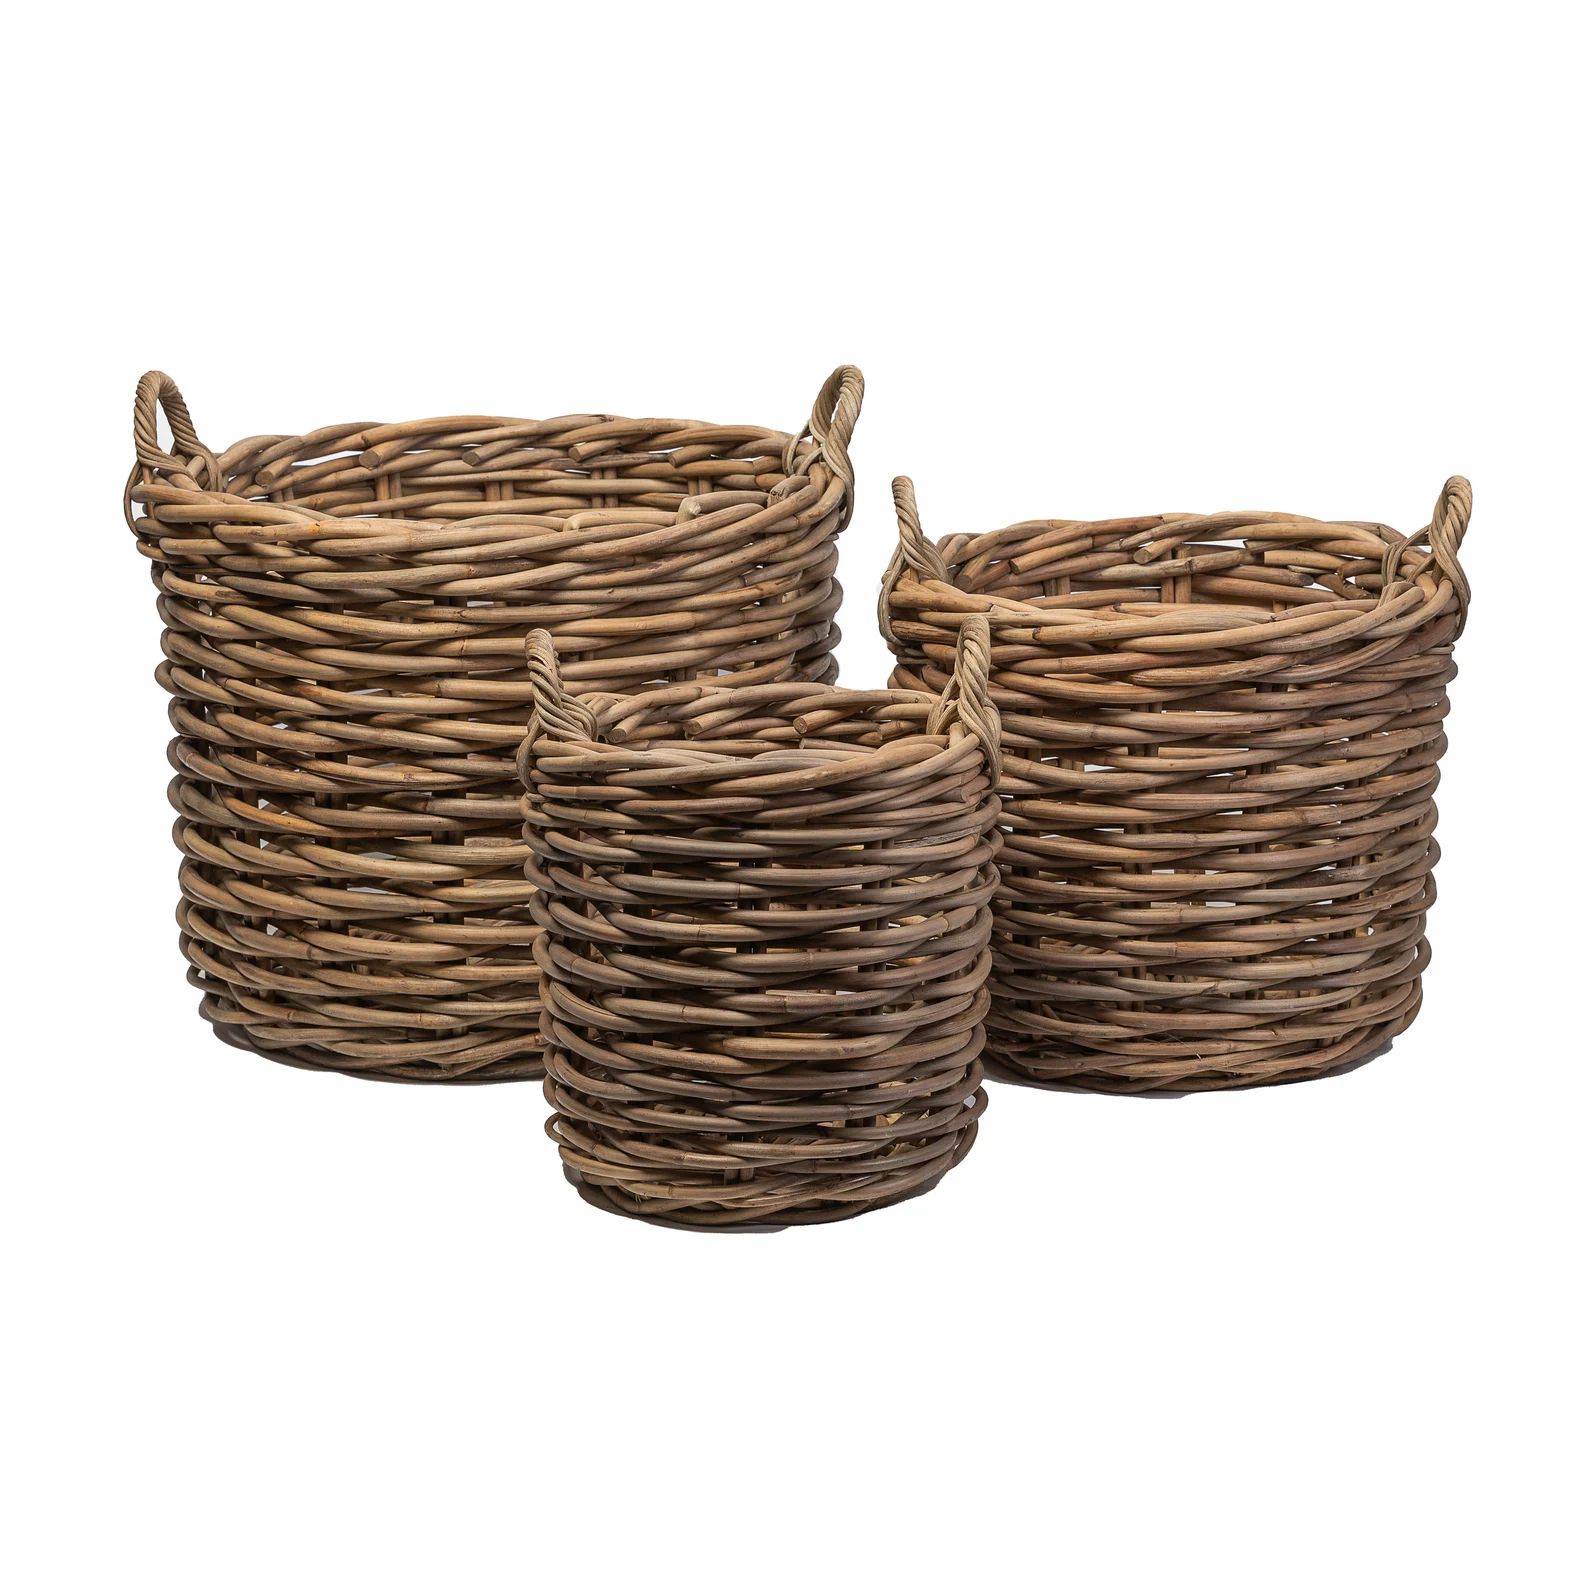 BEAUTIFUL large thick Rattan Baskets, Boho Decor, Boho Baskets, Woven Basket, Rattan Basket, Wick... | Etsy (US)